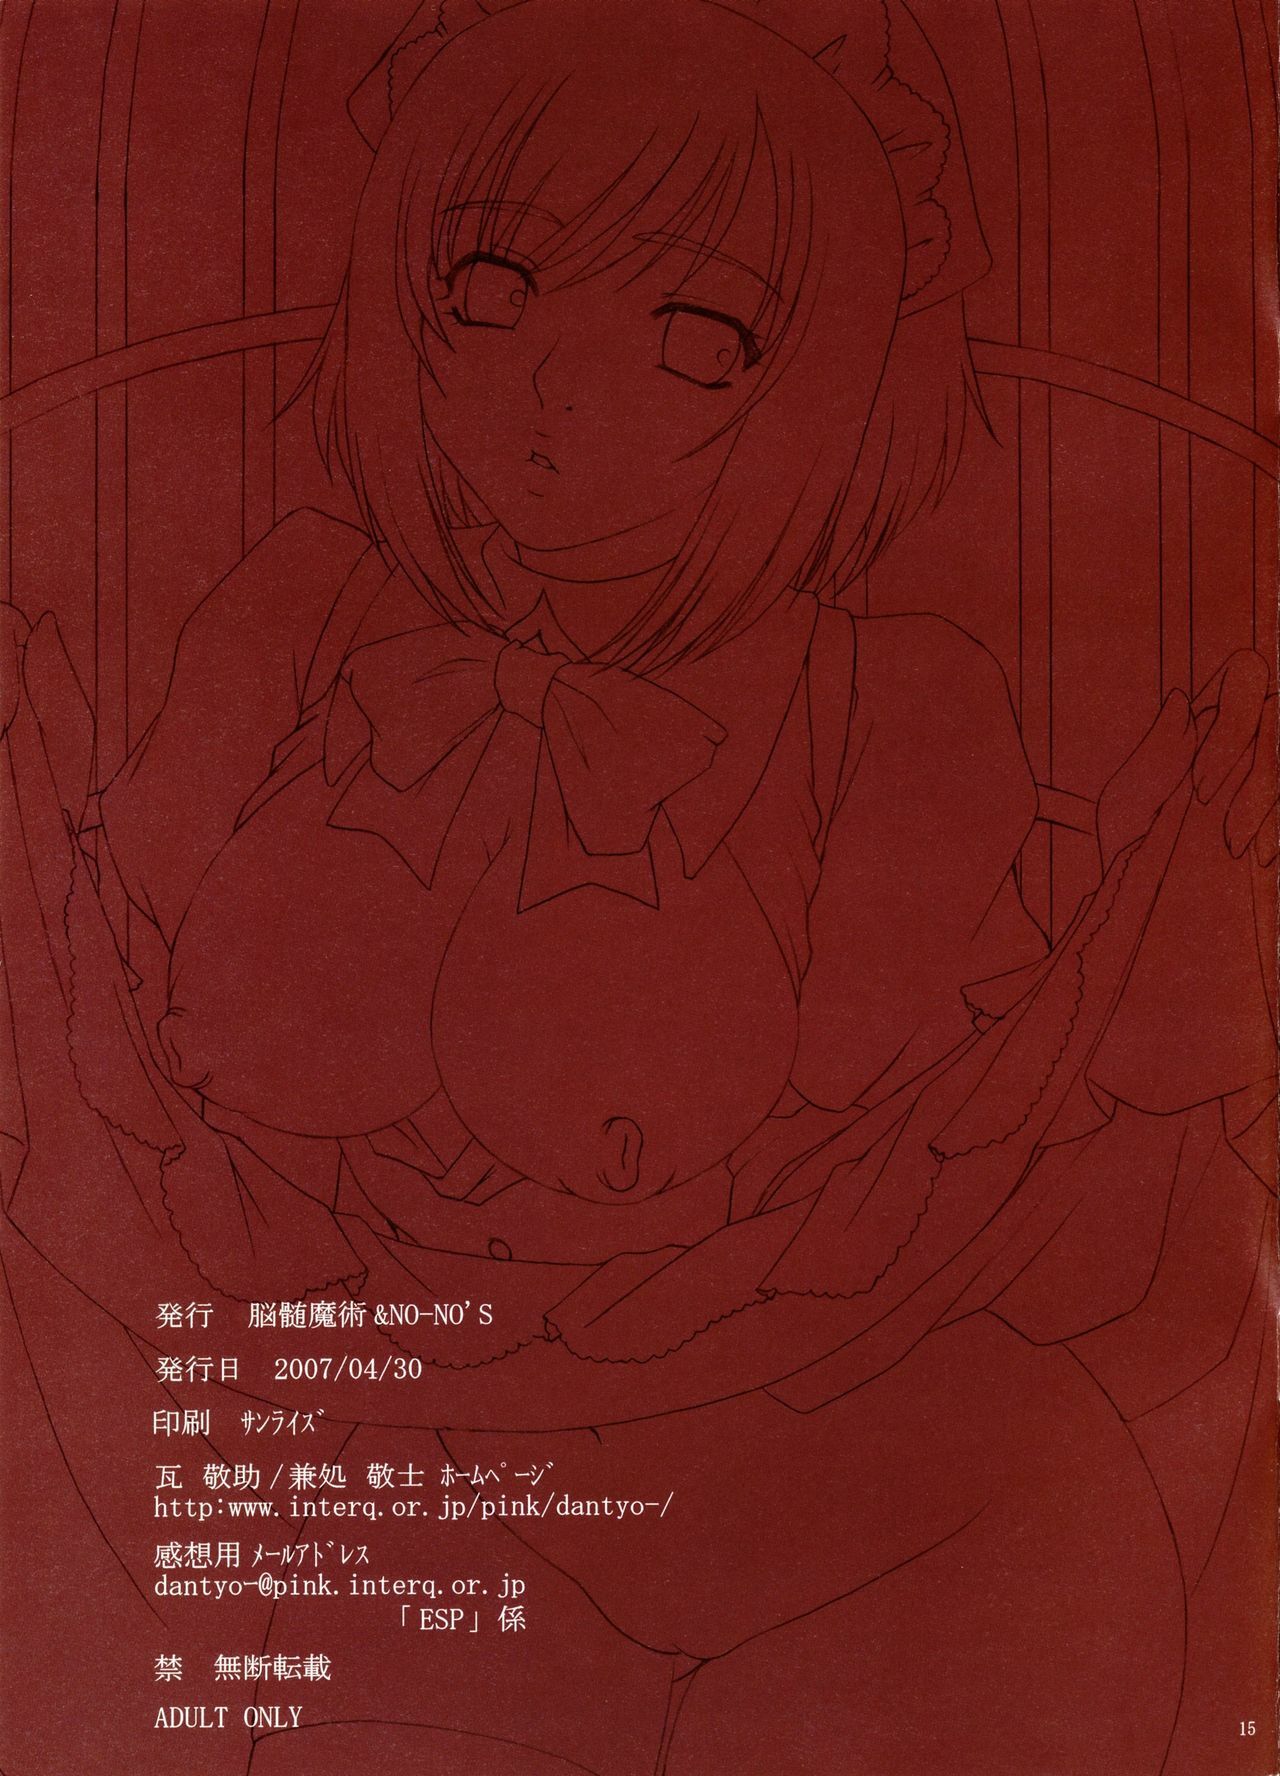 (COMIC1) [NOUZUI MAJUTSU, NO-NO'S (Kanesada Keishi, Kawara Keisuke)] ESPRESSO page 15 full